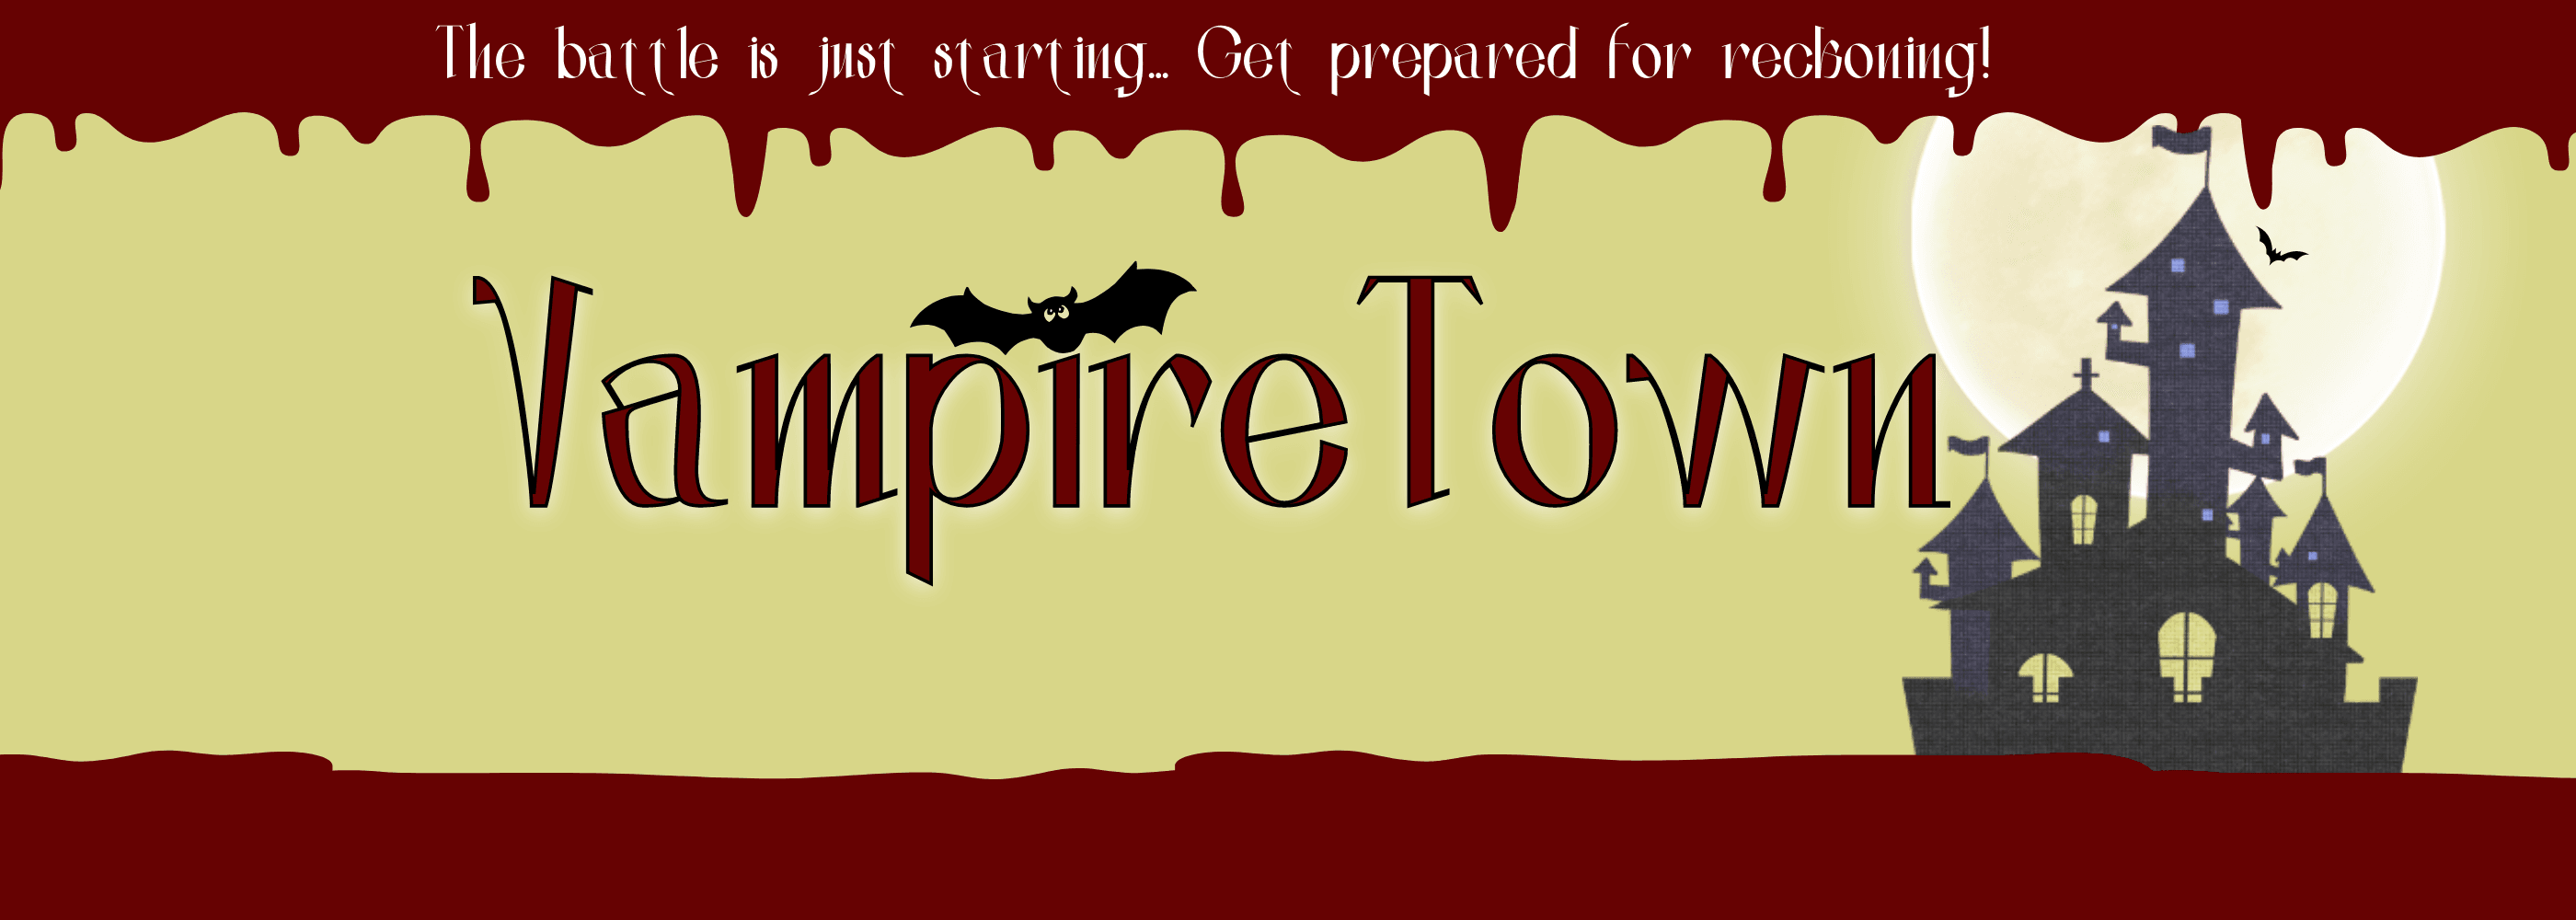 VampireTownDeployer banner